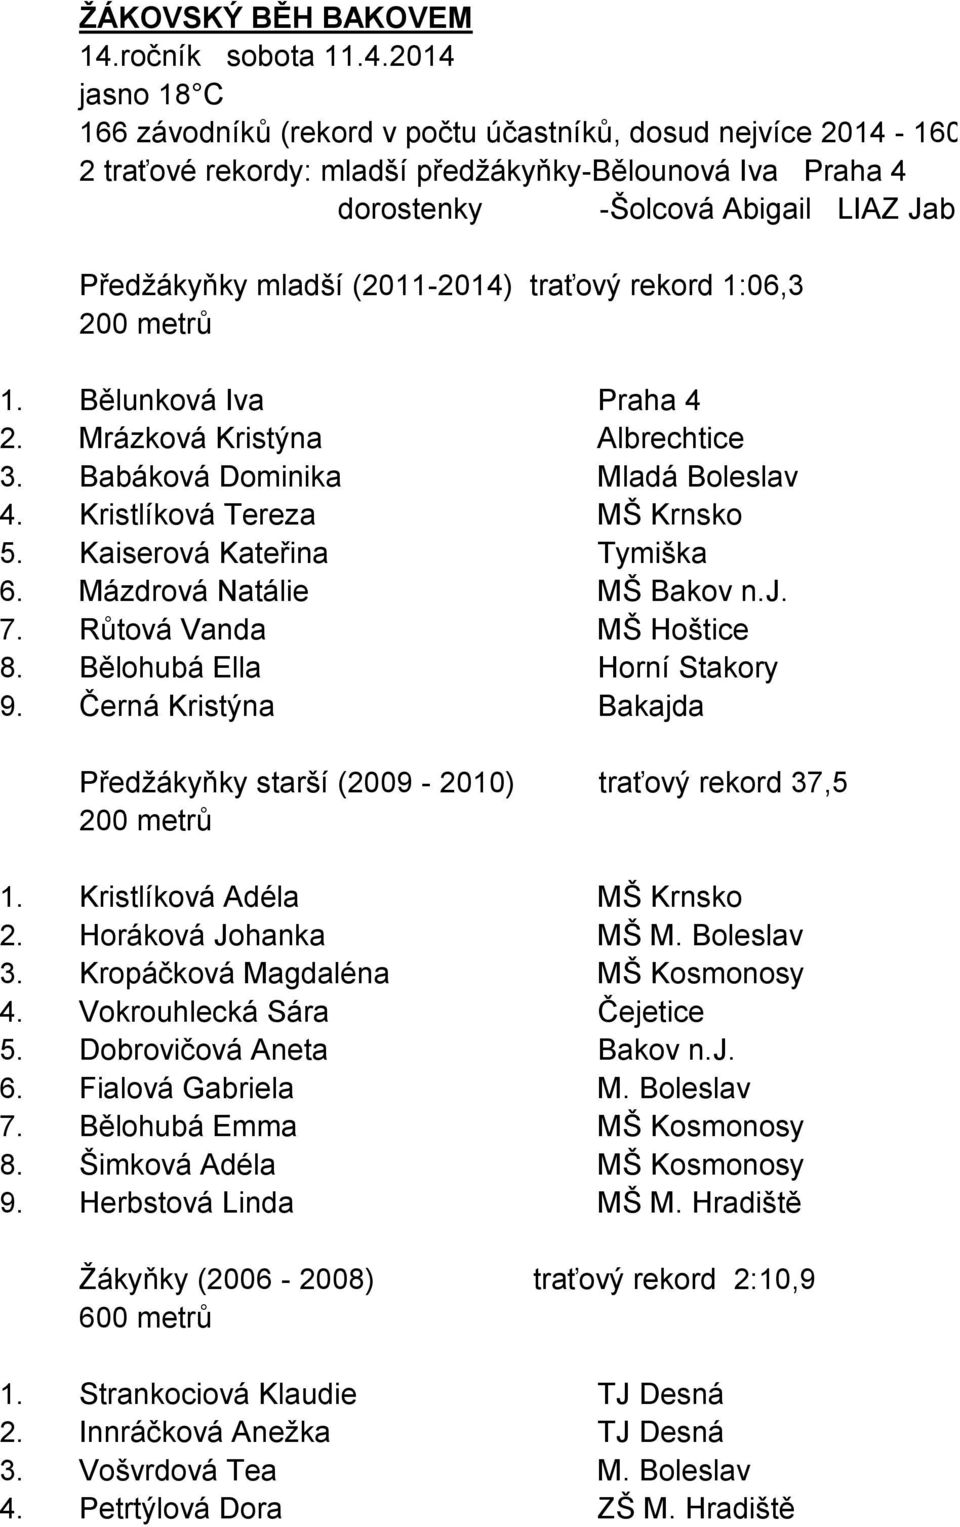 2014 jasno 18 C 166 závodníků (rekord v počtu účastníků, dosud nejvíce 2014-160) 2 traťové rekordy: mladší předžákyňky-bělounová Iva Praha 4 dorostenky -Šolcová Abigail LIAZ Jablonec Předžákyňky